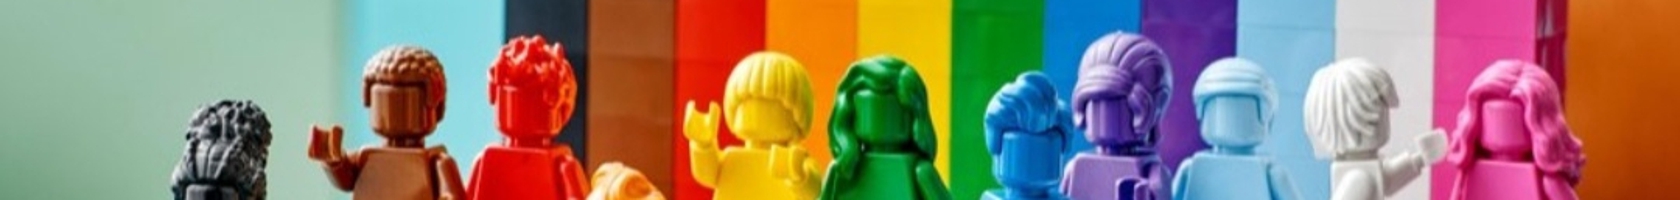  LEGO_Parsa برسی لگو نینجاگو